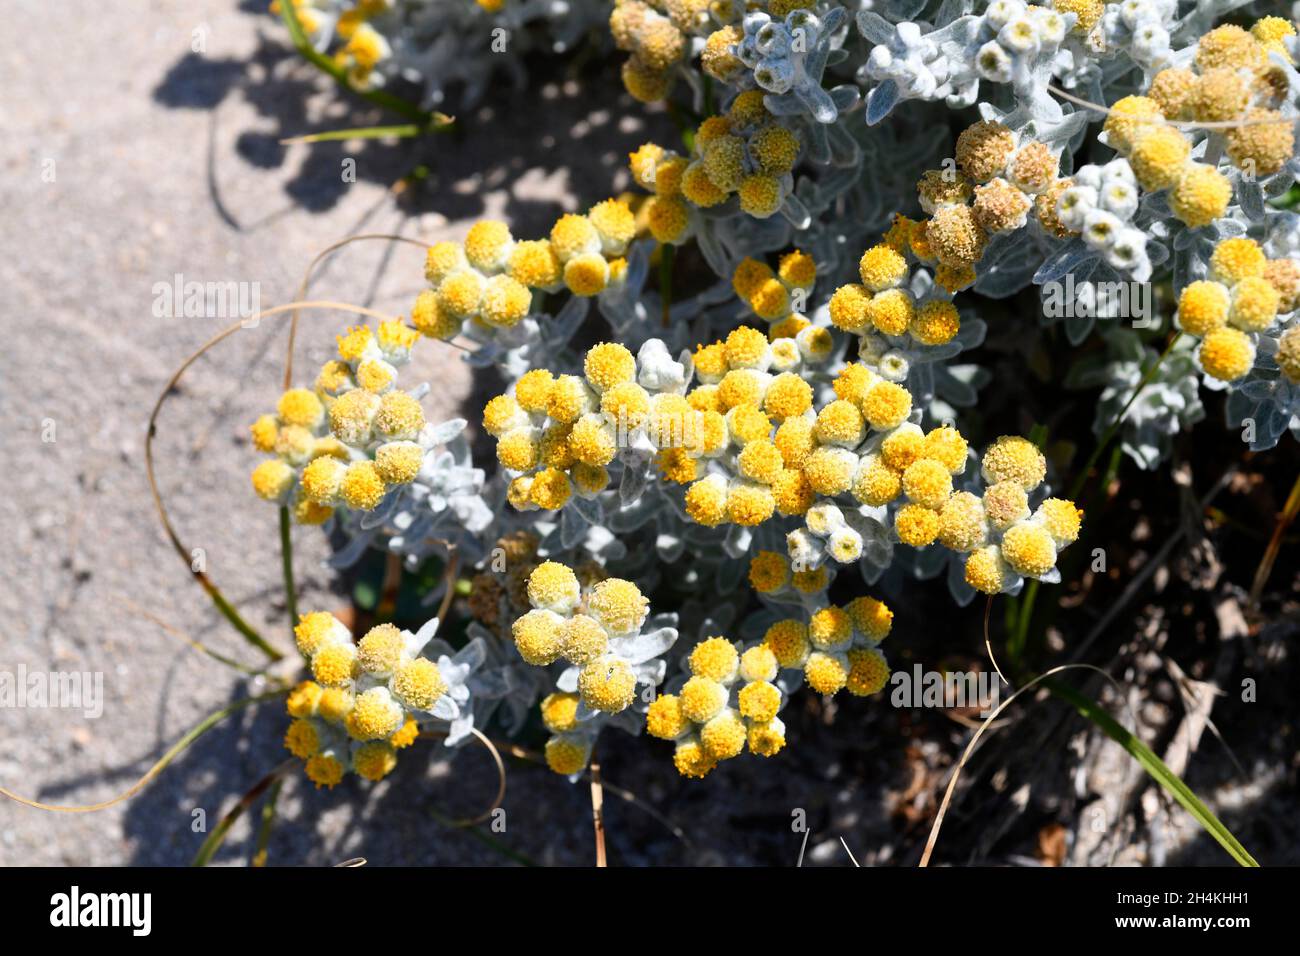 La pianta di erbaccia di cotone (Otanthus maritimus) è un'erba perenne originaria di parte delle coste mediterranee e delle coste atlantiche del Portogallo; Spagna, francia e. Foto Stock